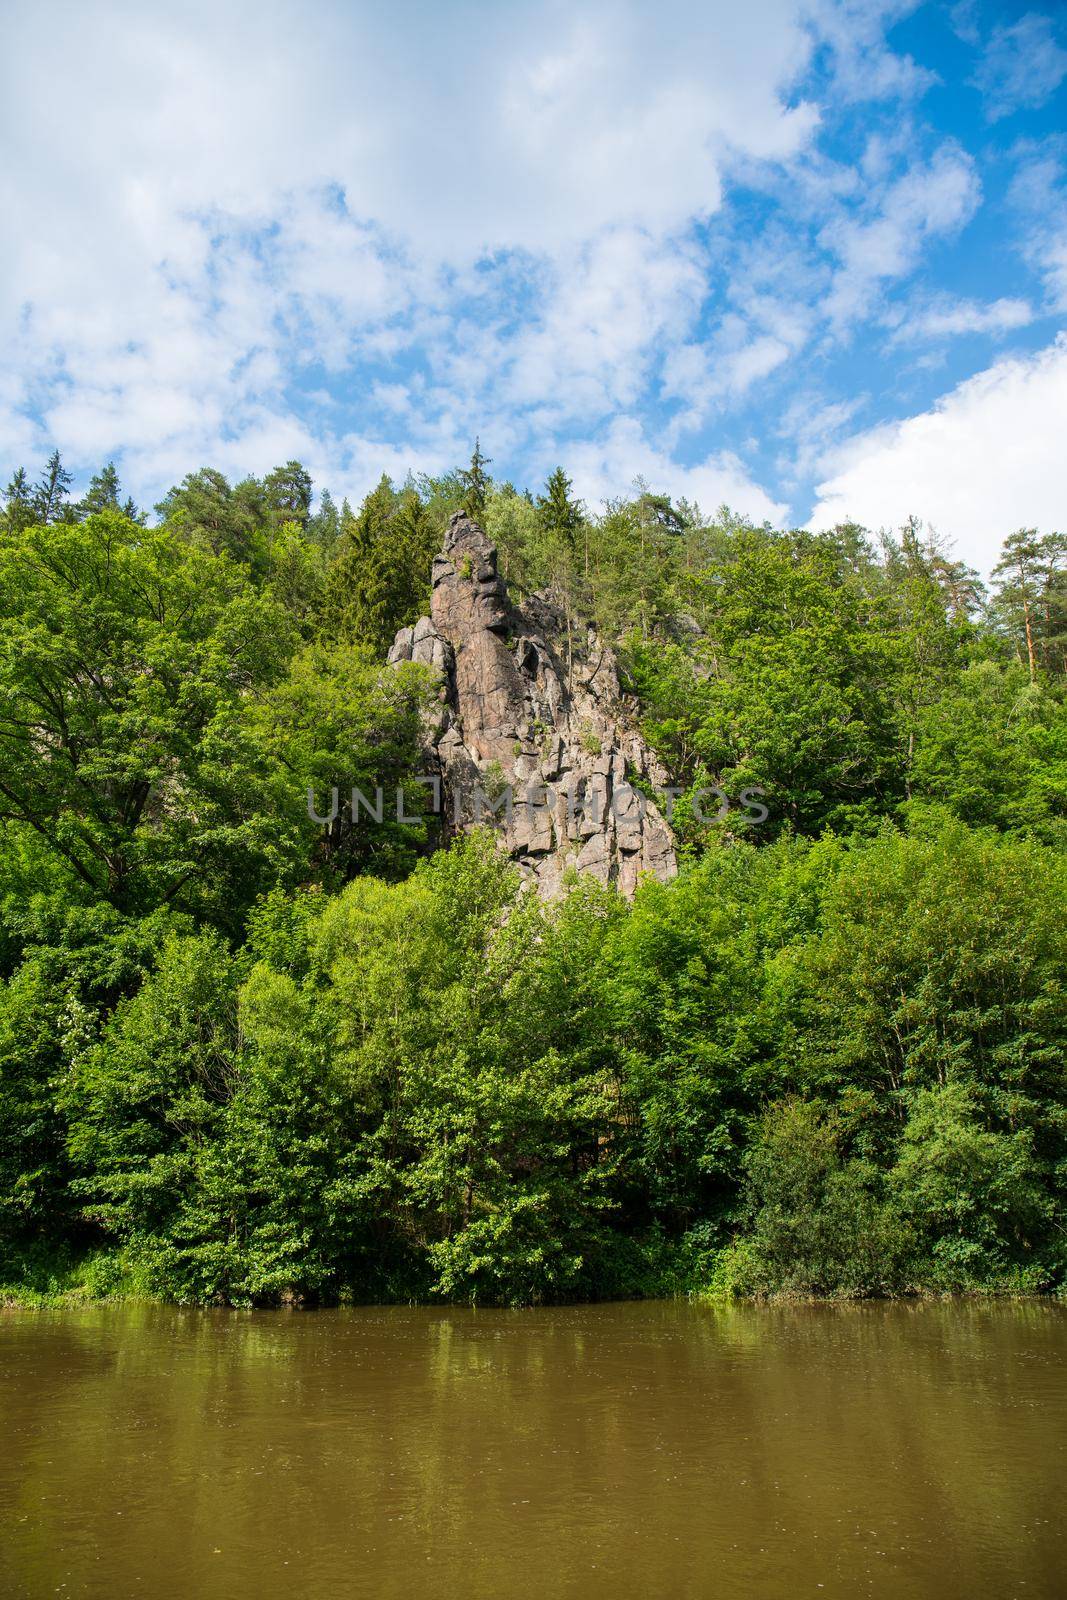 Rock formation Svatoske skaly near Karlovy Vary by Jindrich_Blecha